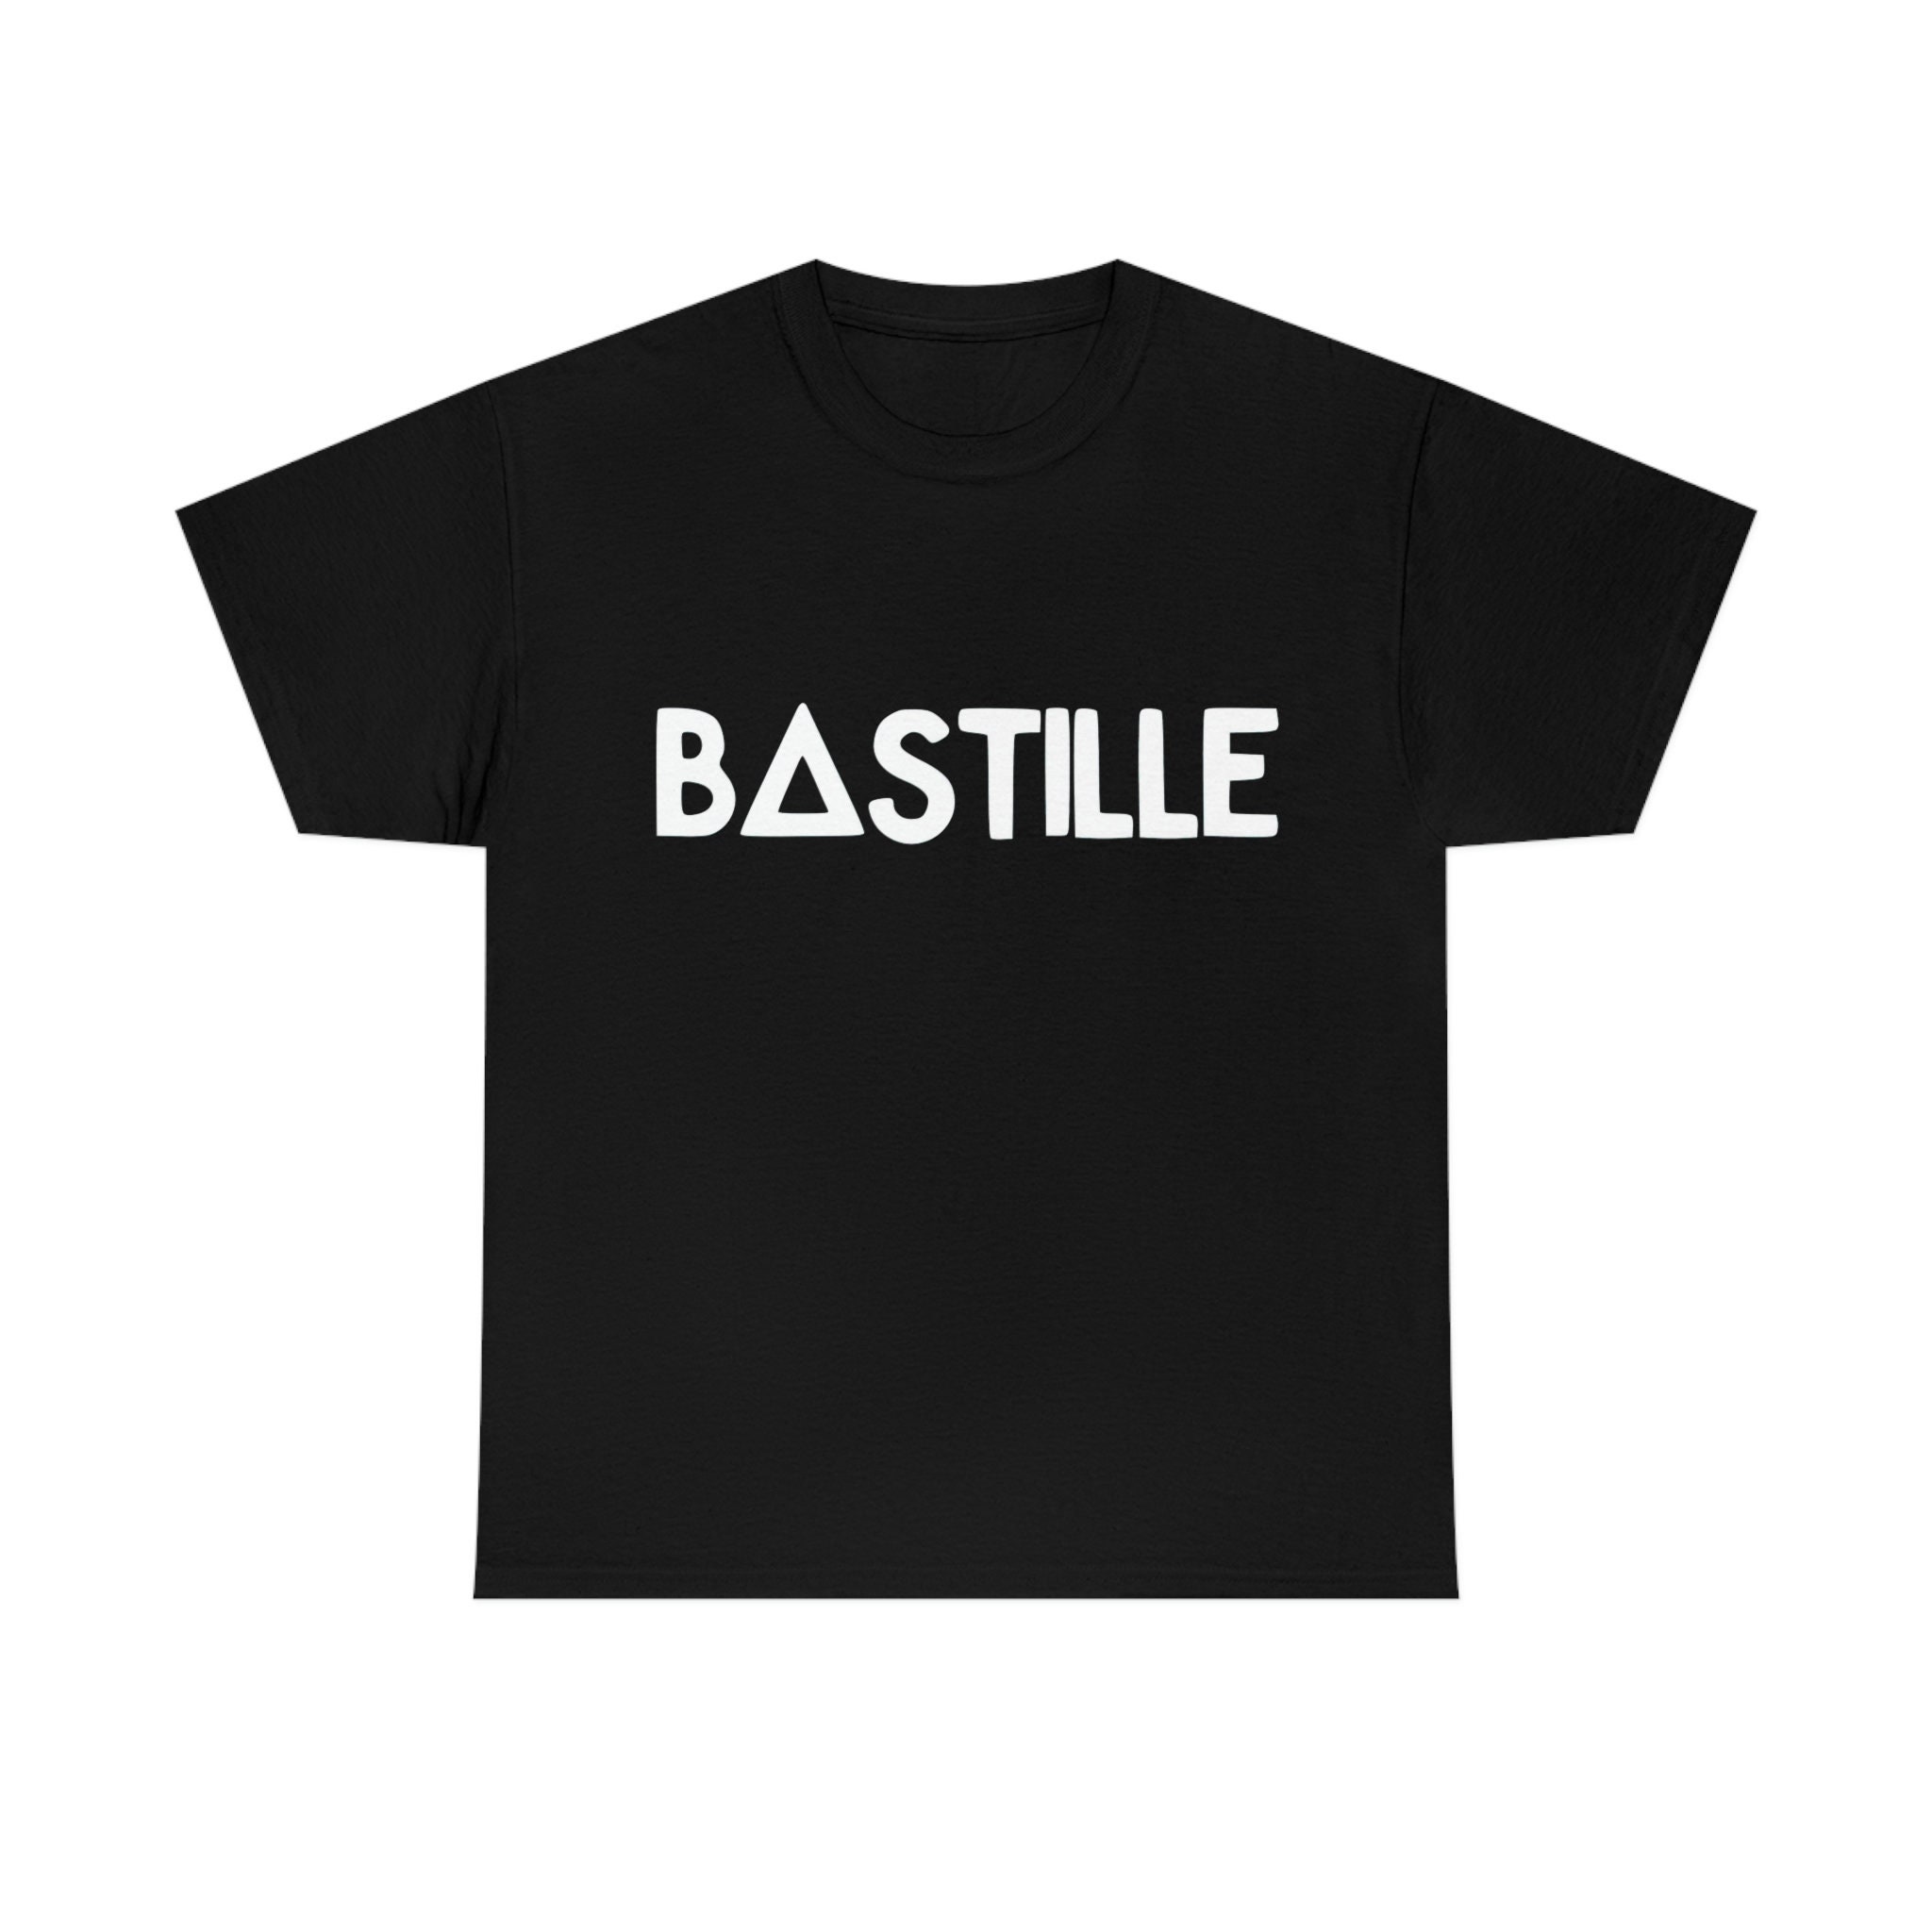 Bastille Bad Blood - Etsy UK